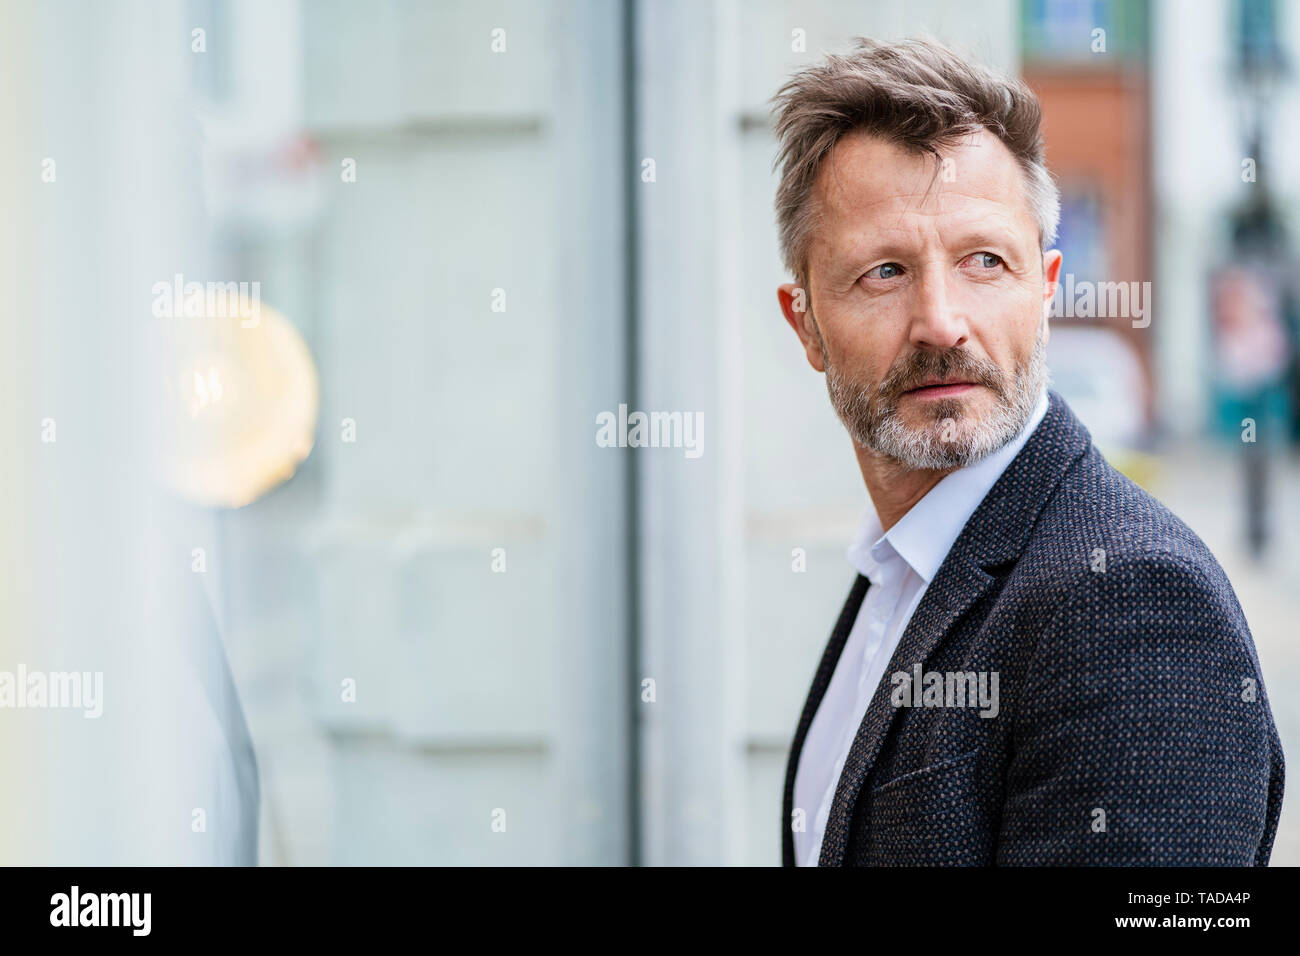 Portrait of mature businessman avec barbe grisonnant regardant quelque chose Banque D'Images